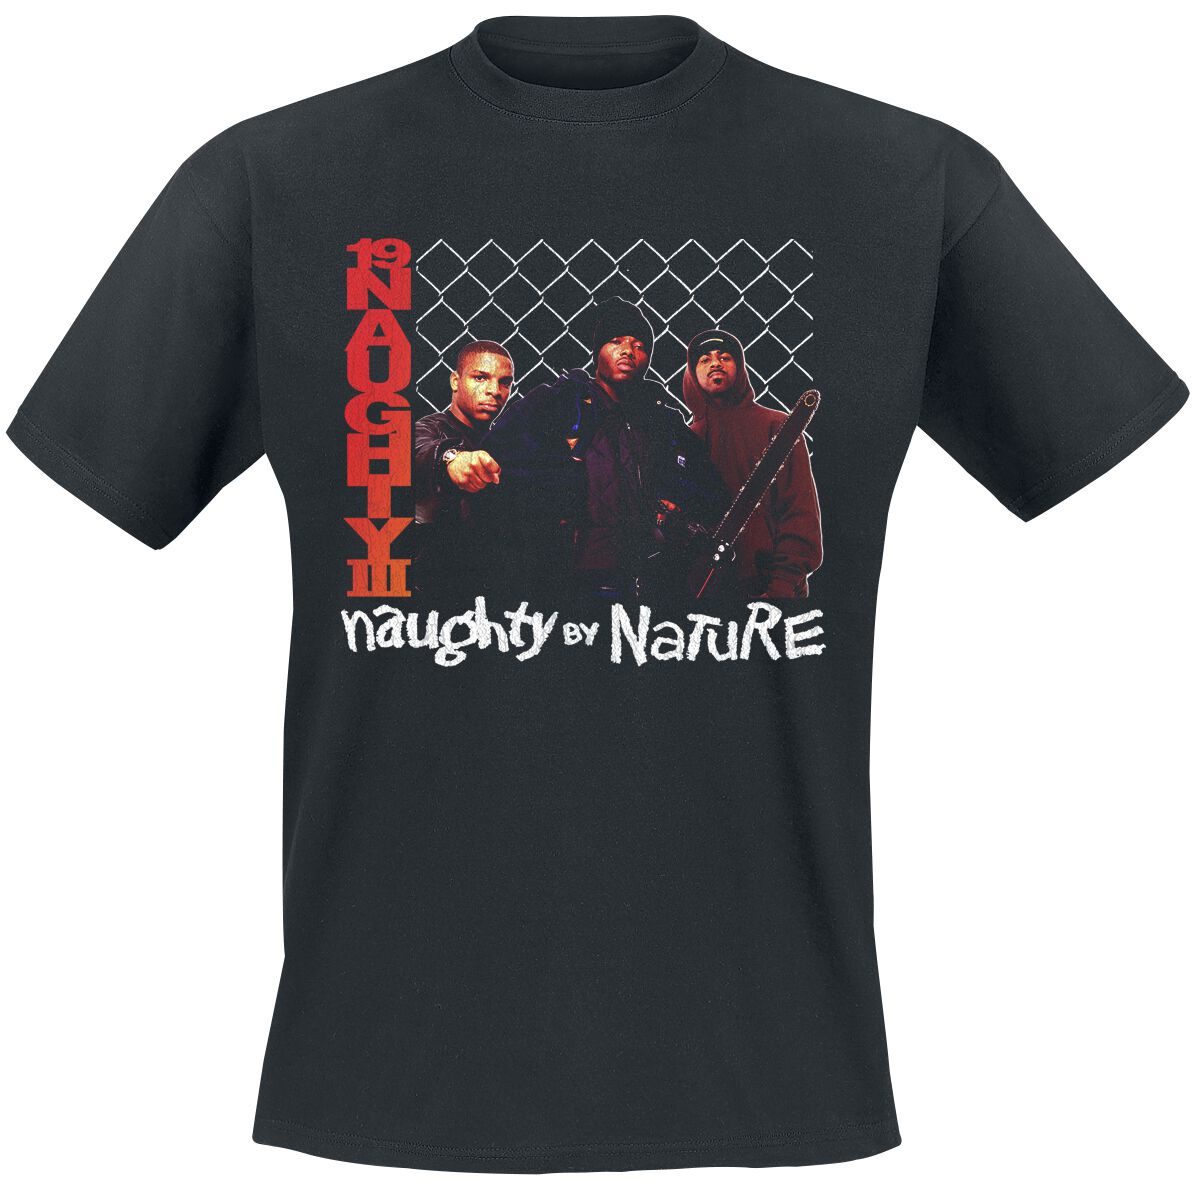 T-Shirt Manches courtes de Naughty by Nature - 19 Naughty 111 - S à 4XL - pour Homme - noir